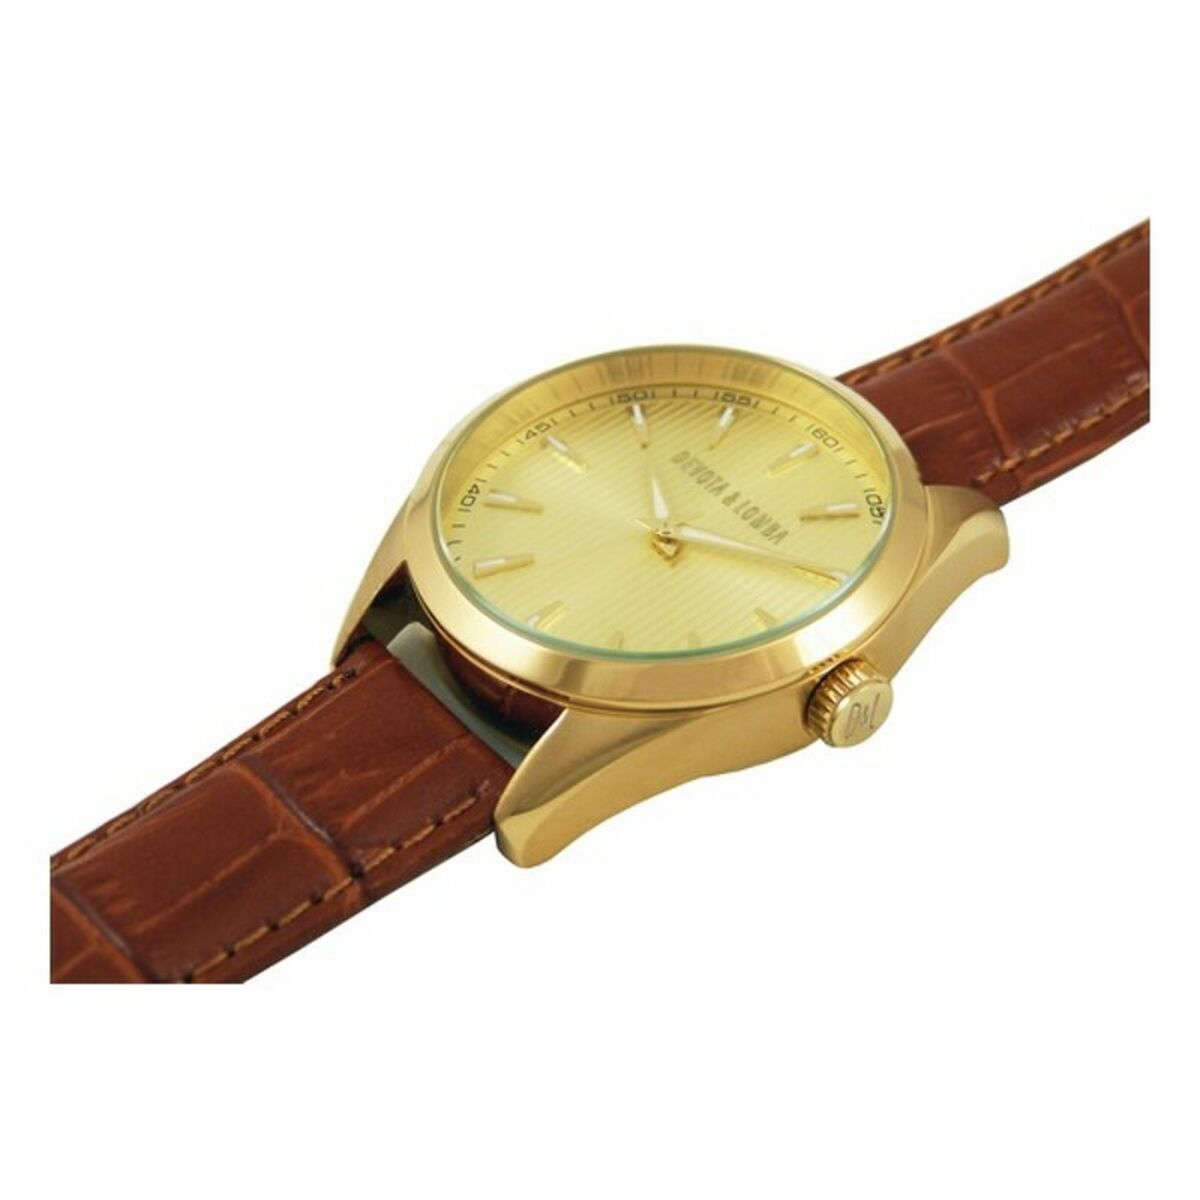 Horloge Heren Devota & Lomba DL014ML-02BRGOLD (Ø 40 mm)